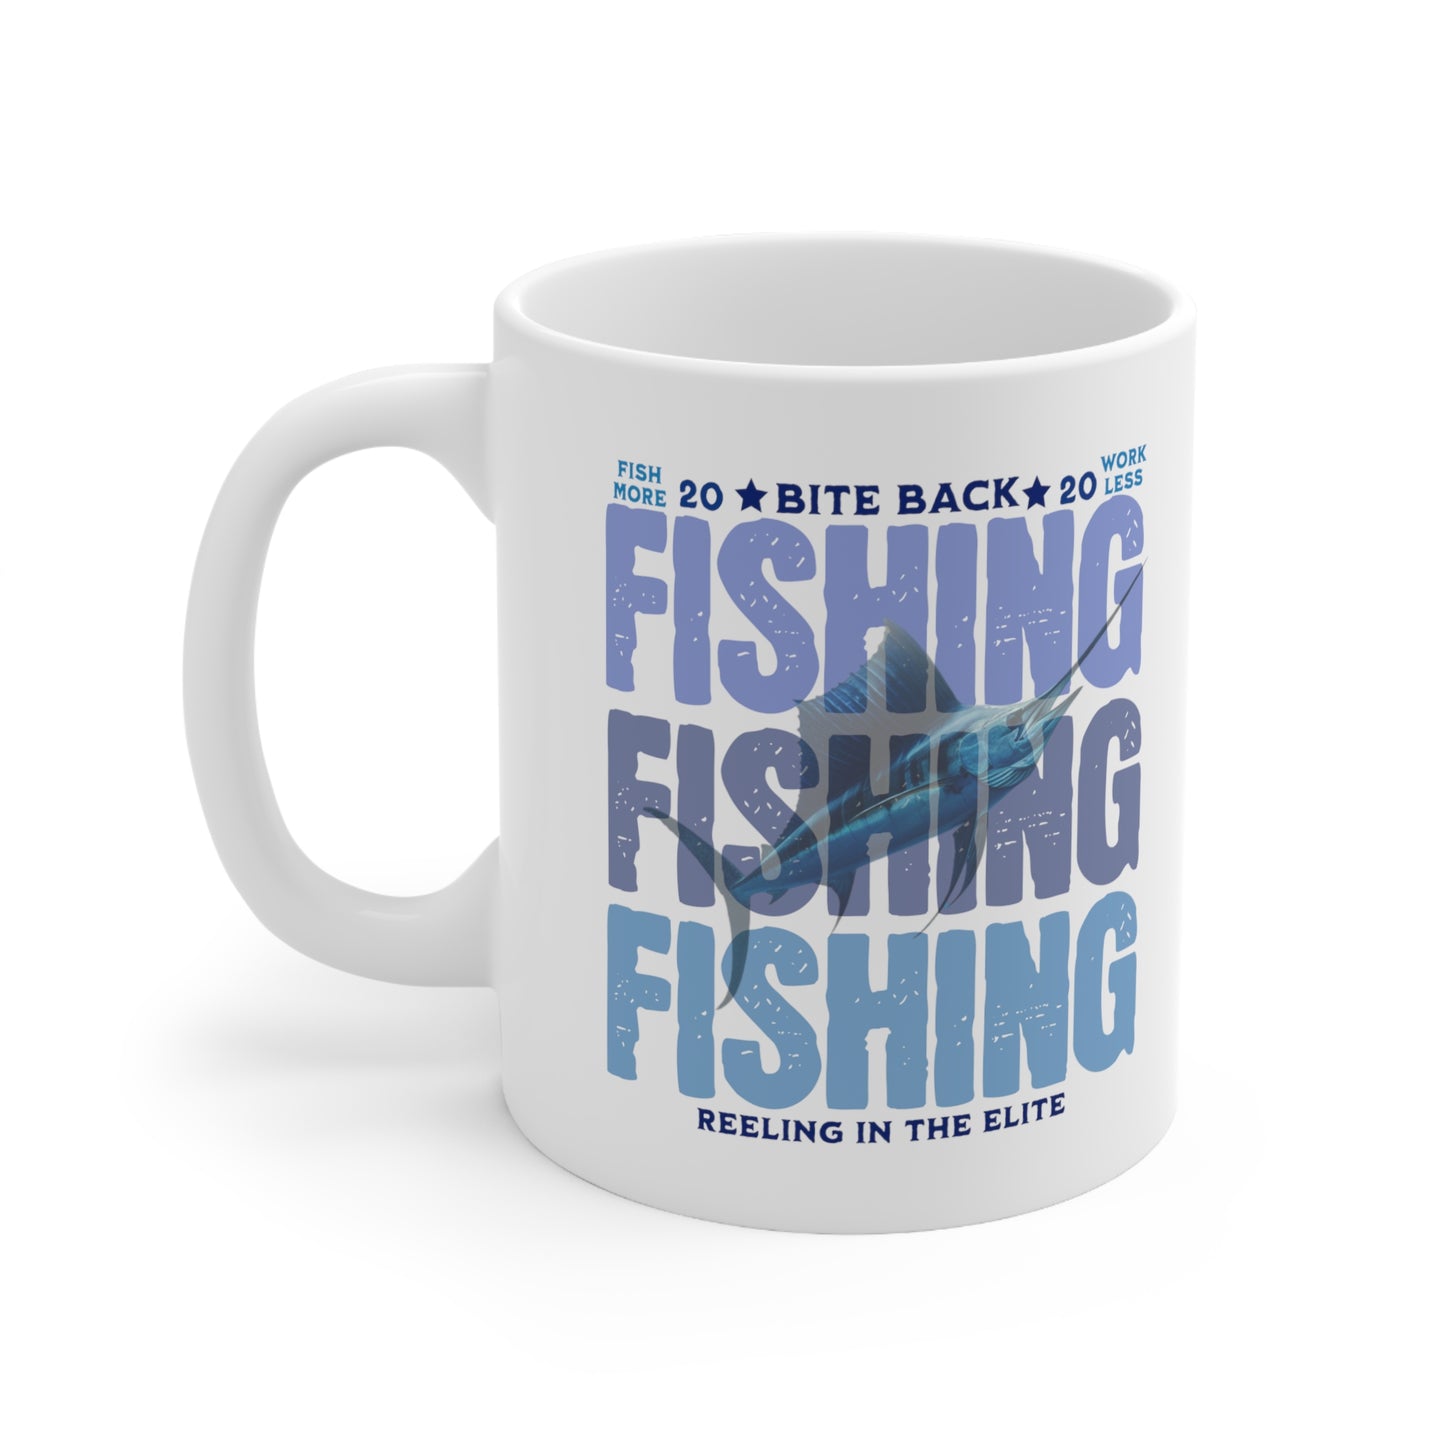 FISHING FISHING FISHING Ceramic Mug 11oz